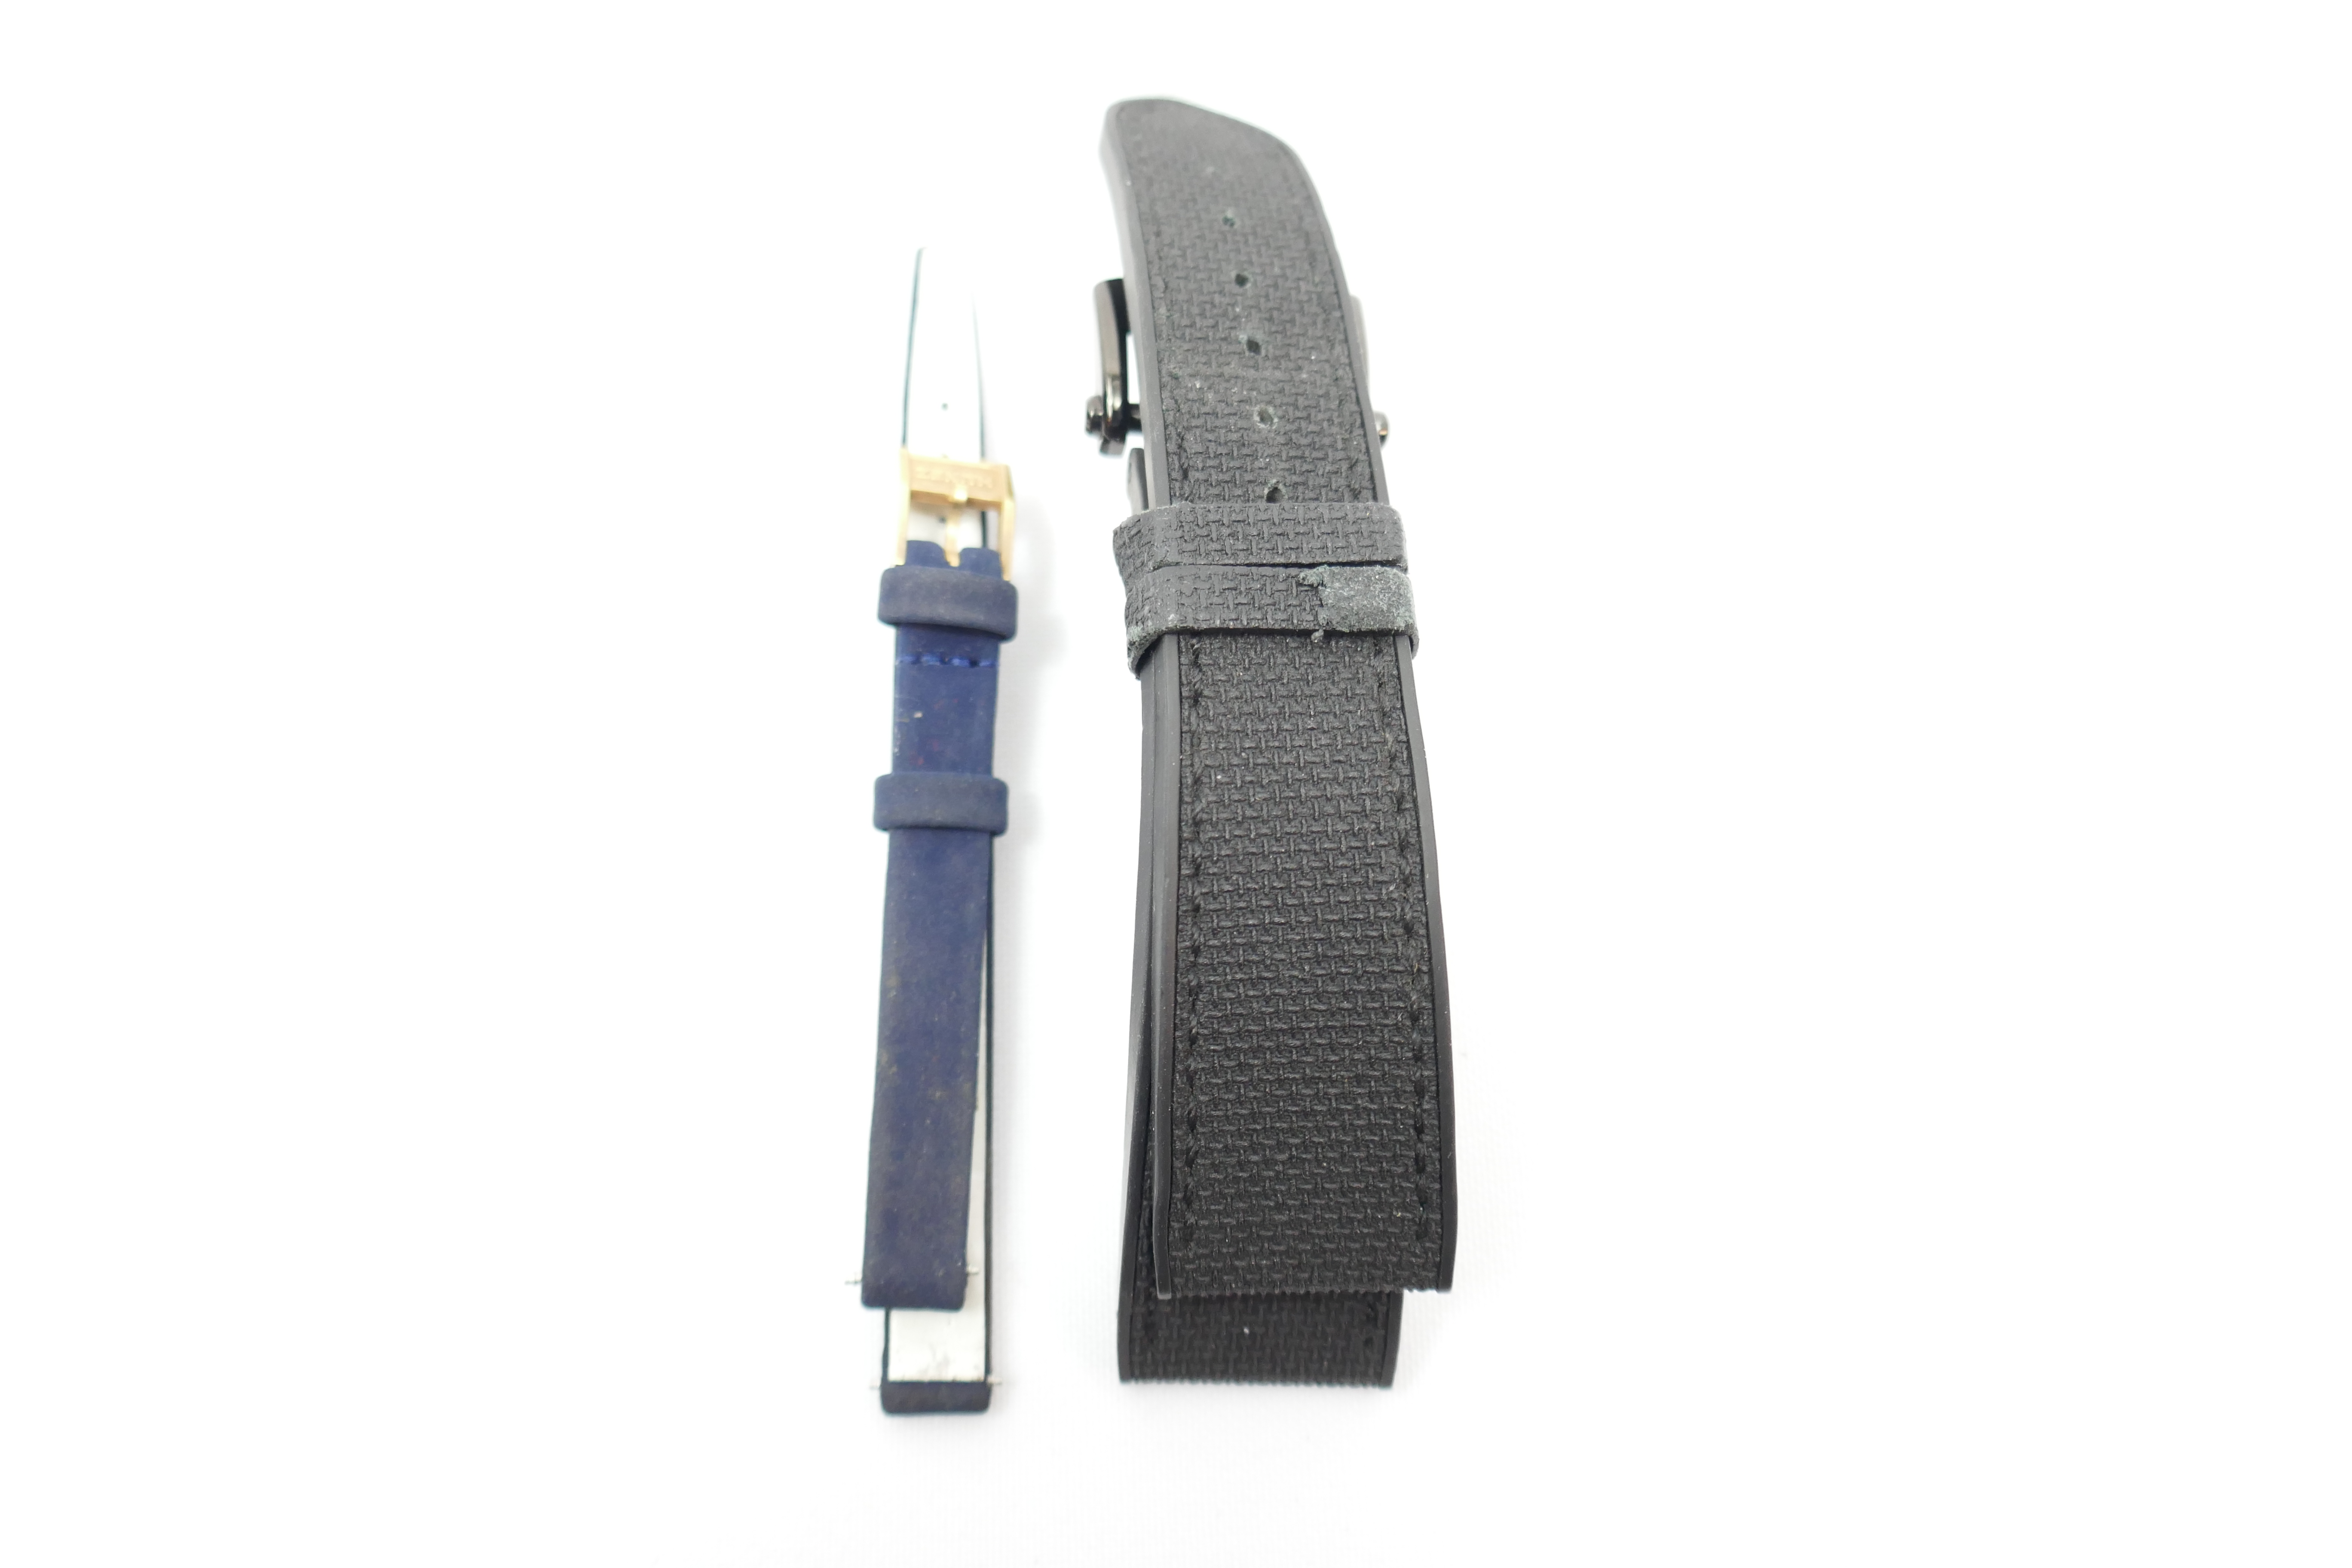 Zenith 21mm.9mm watch straps